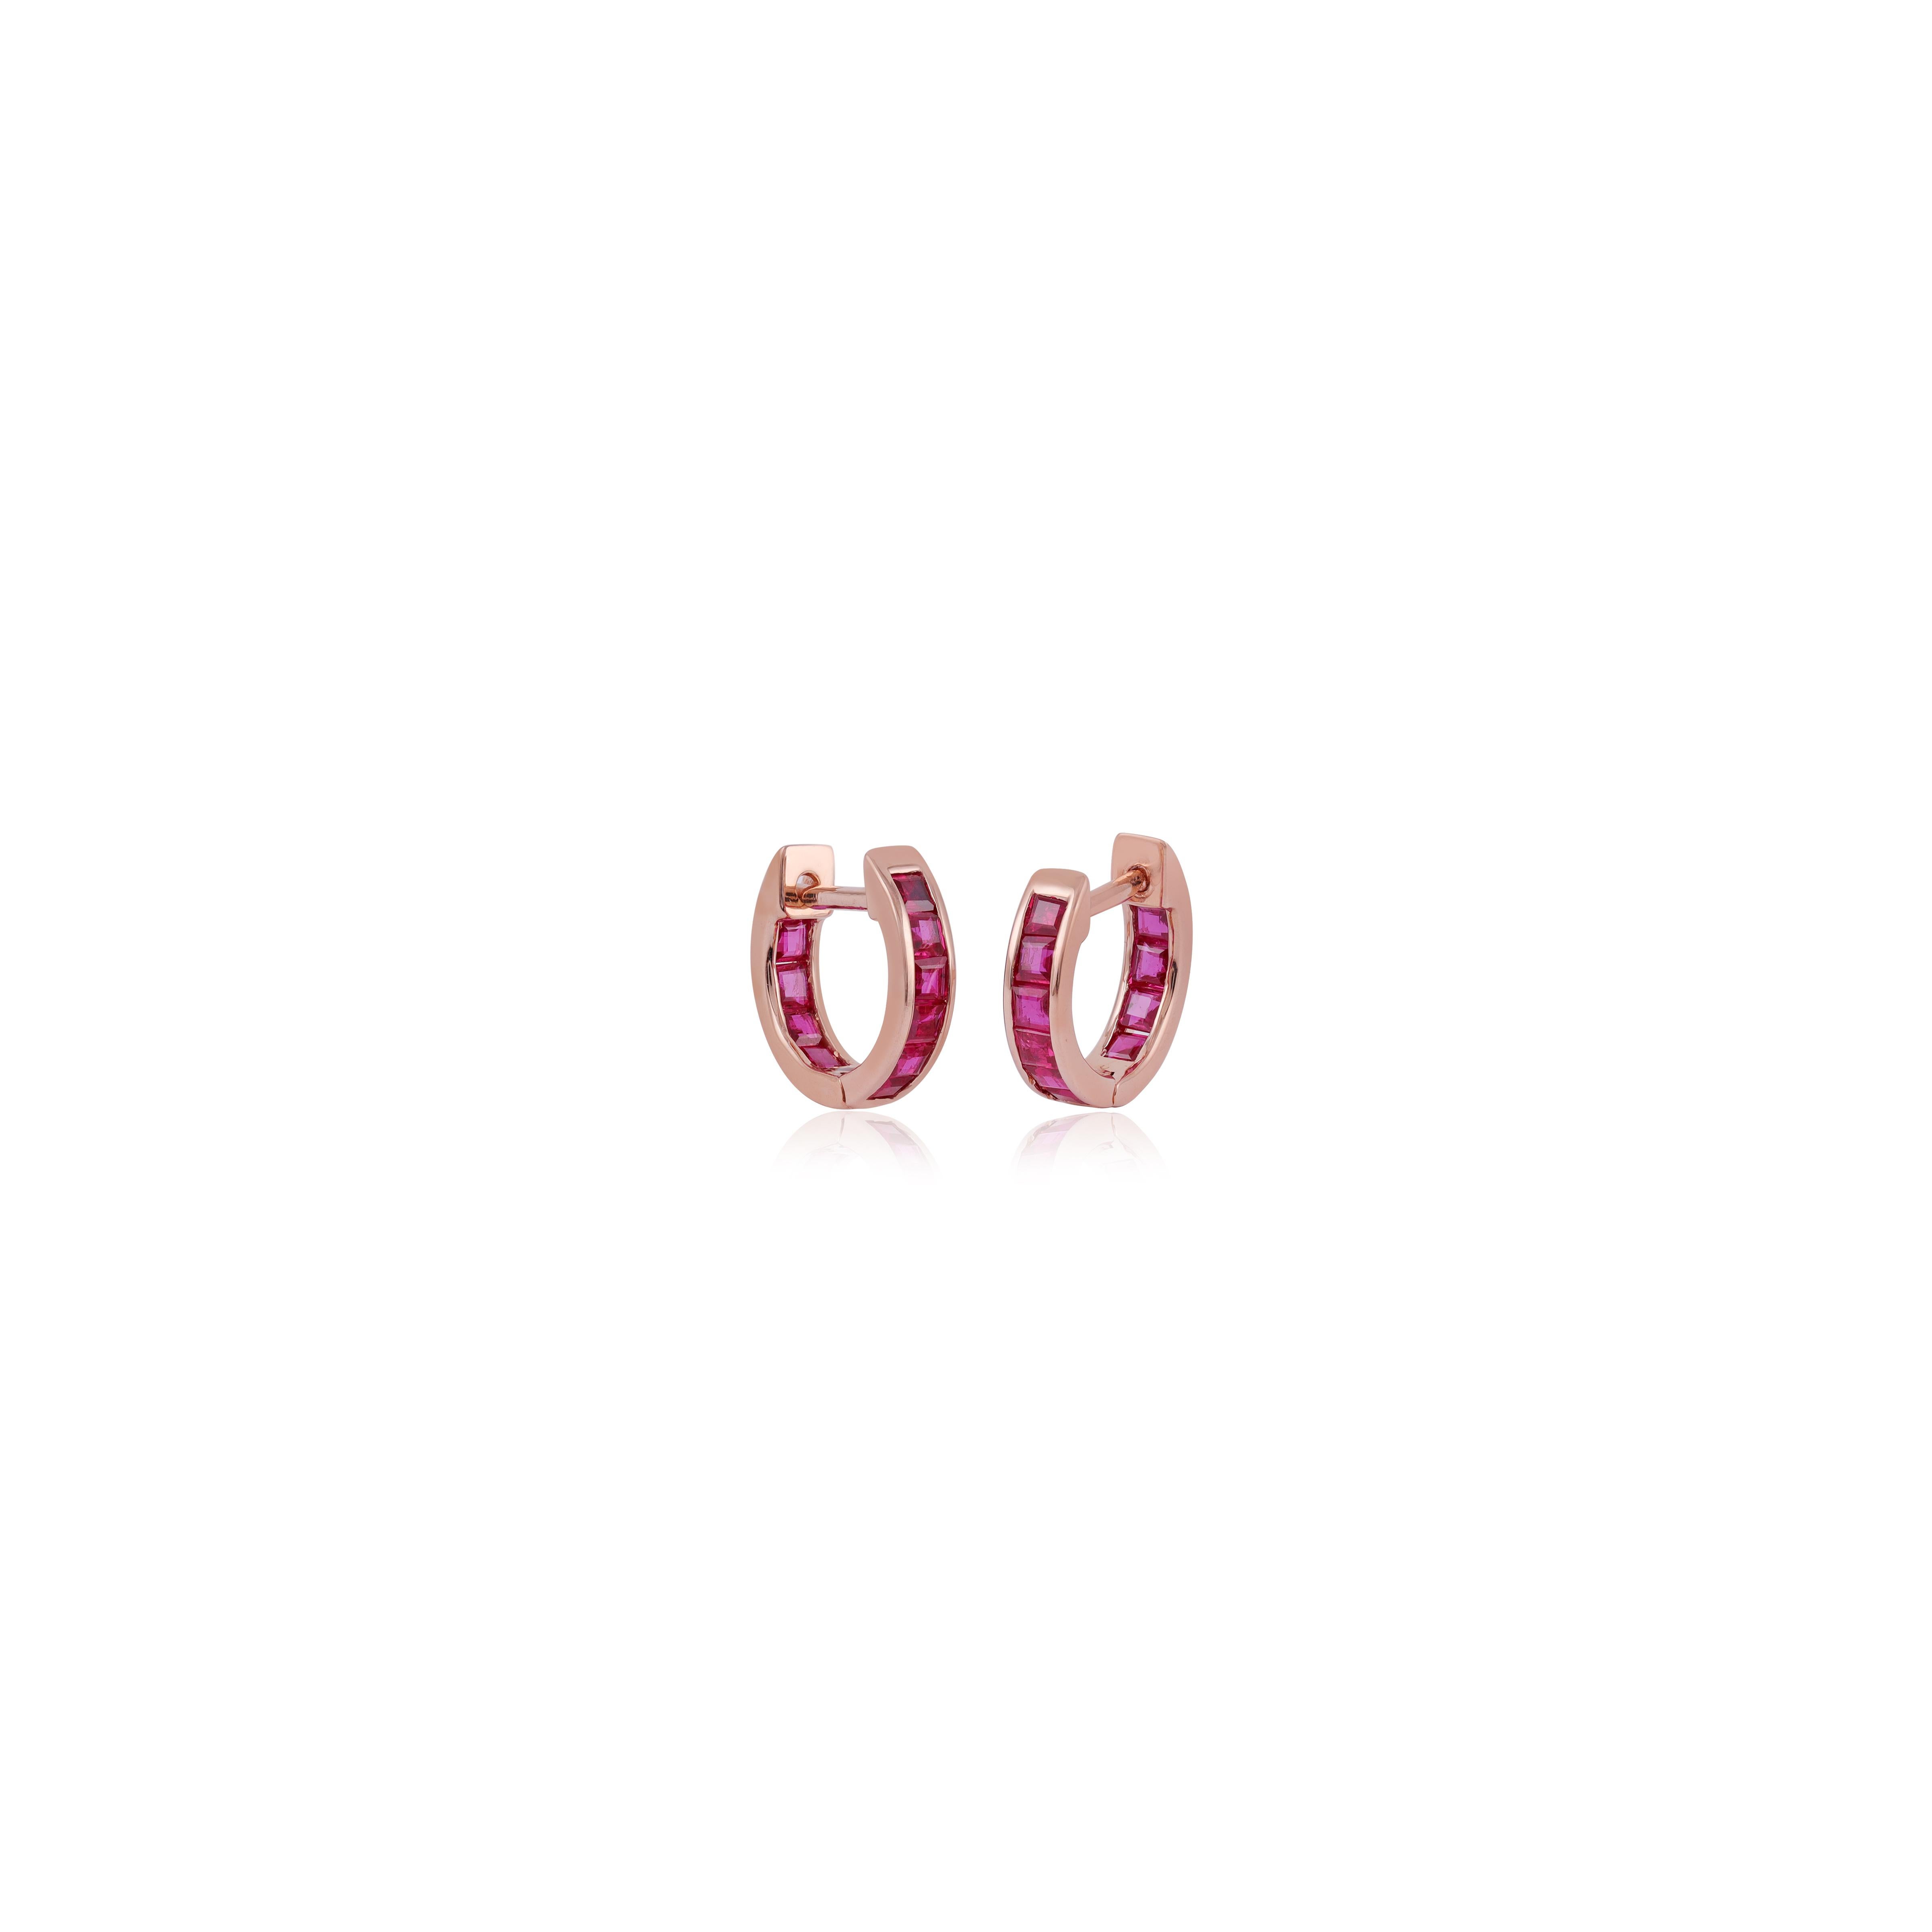 Coulées dans de l'or rose 18 carats, ces boucles d'oreilles sont serties à la main de 1,06 carats de rubis. Disponible en or rose, jaune et blanc. Livrées par paire, elles peuvent également être achetées à l'unité.

Composition
 Poids du rubis :